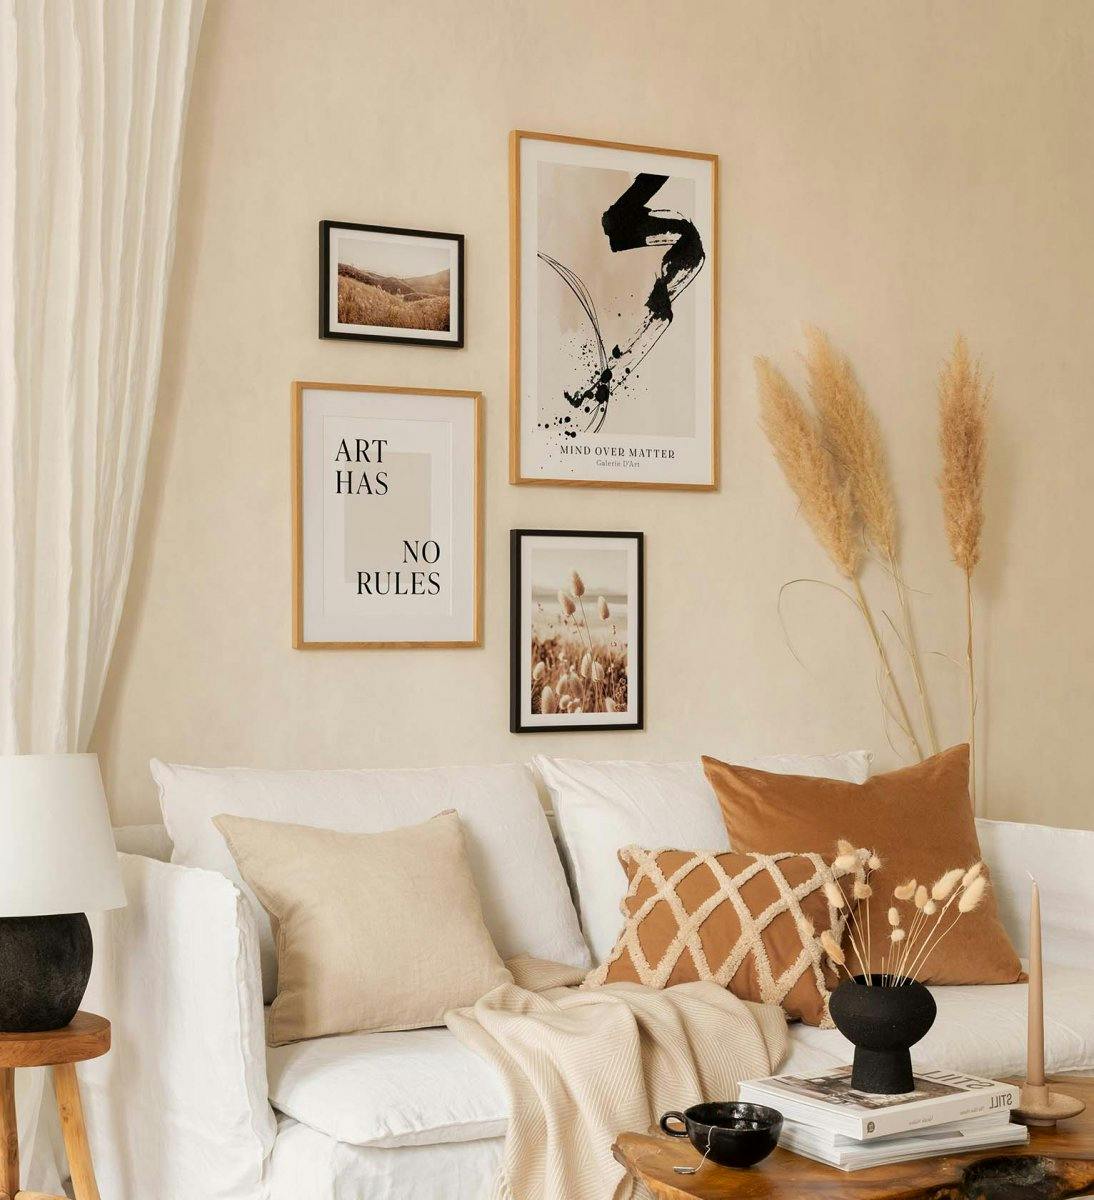 Trendi fényképekből és tipográfiákból álló galériafal derűs színekben a nappaliba